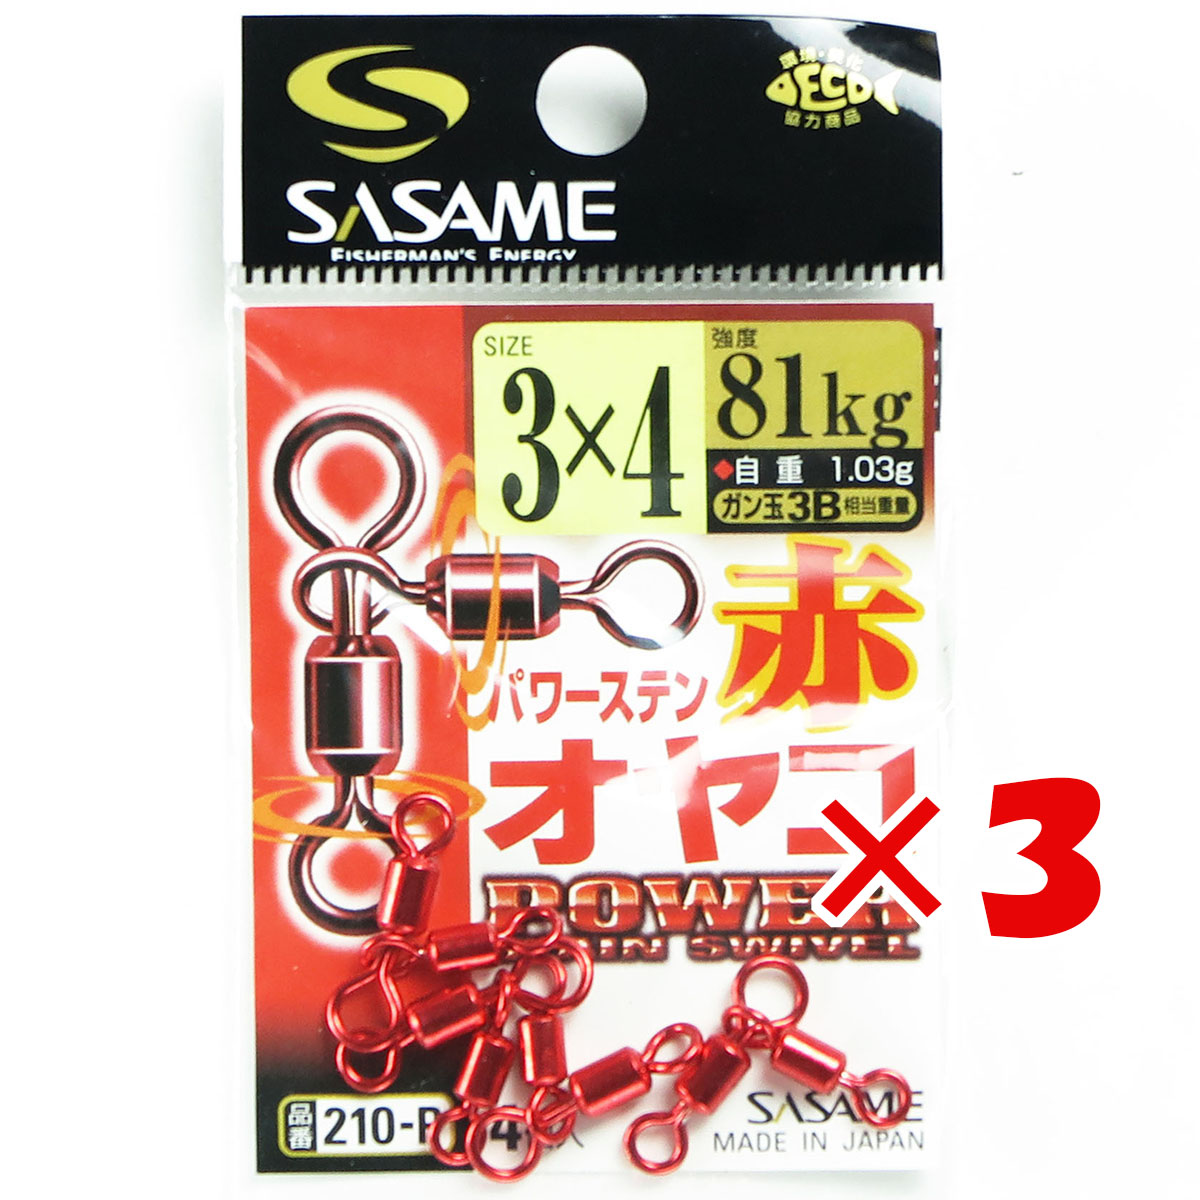  「 ささめ針 SASAME 210-P 赤パワーステンオヤコ 3x4号 」  釣り 釣り具 釣具 釣り用品